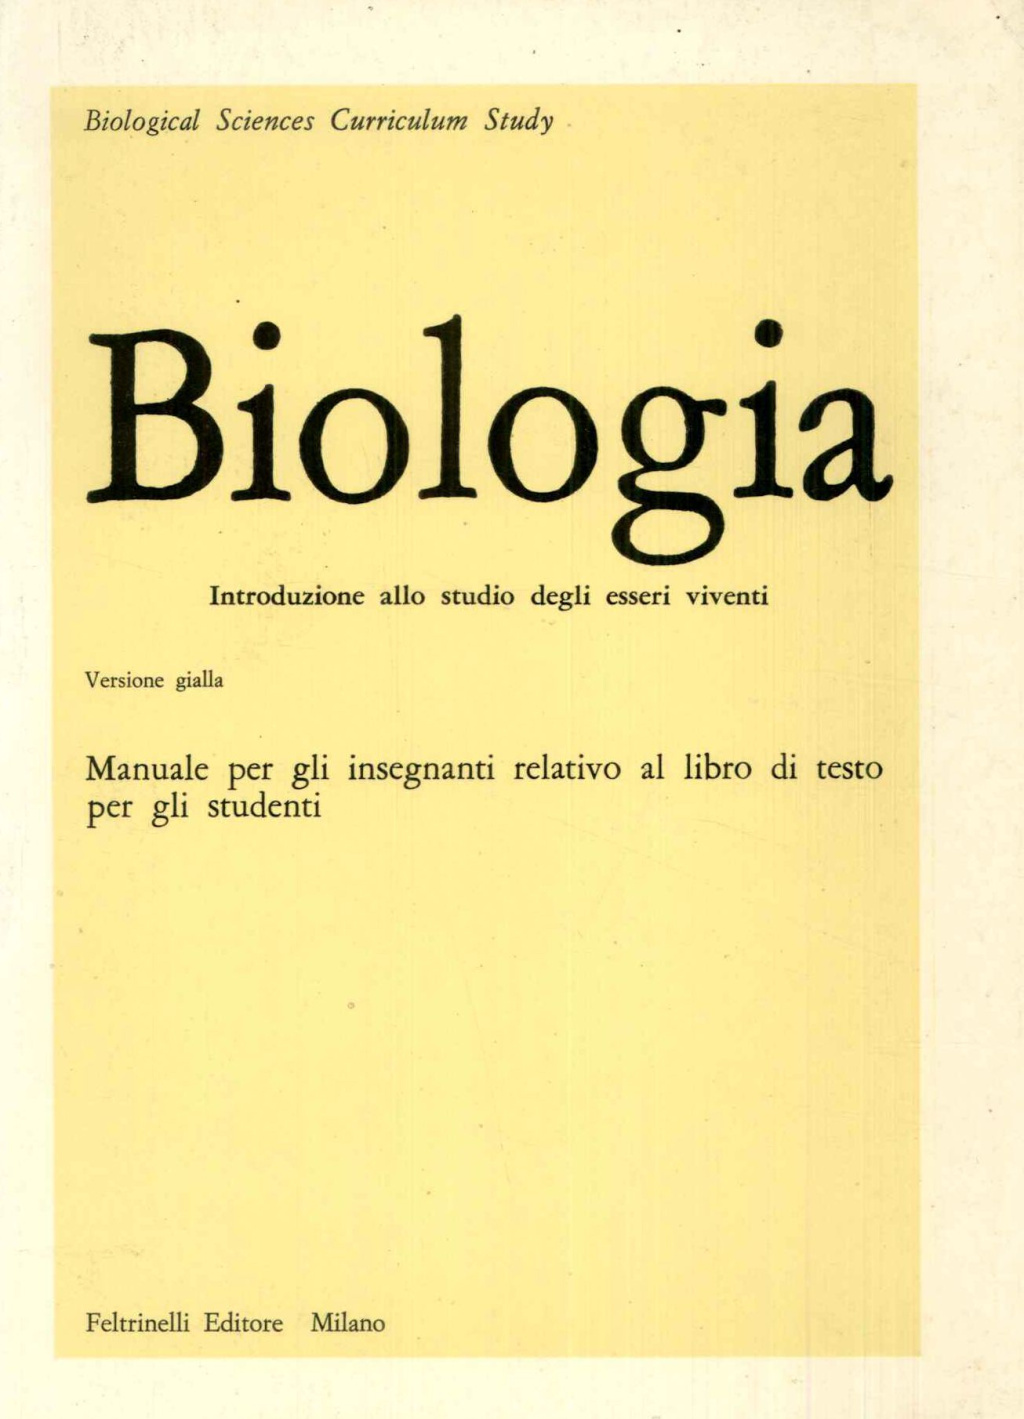 Biologia. Introduzione allo studio degli esseri viventi.Manuale per gli insegnanti relativo alla guida di laboratorio per gli studenti